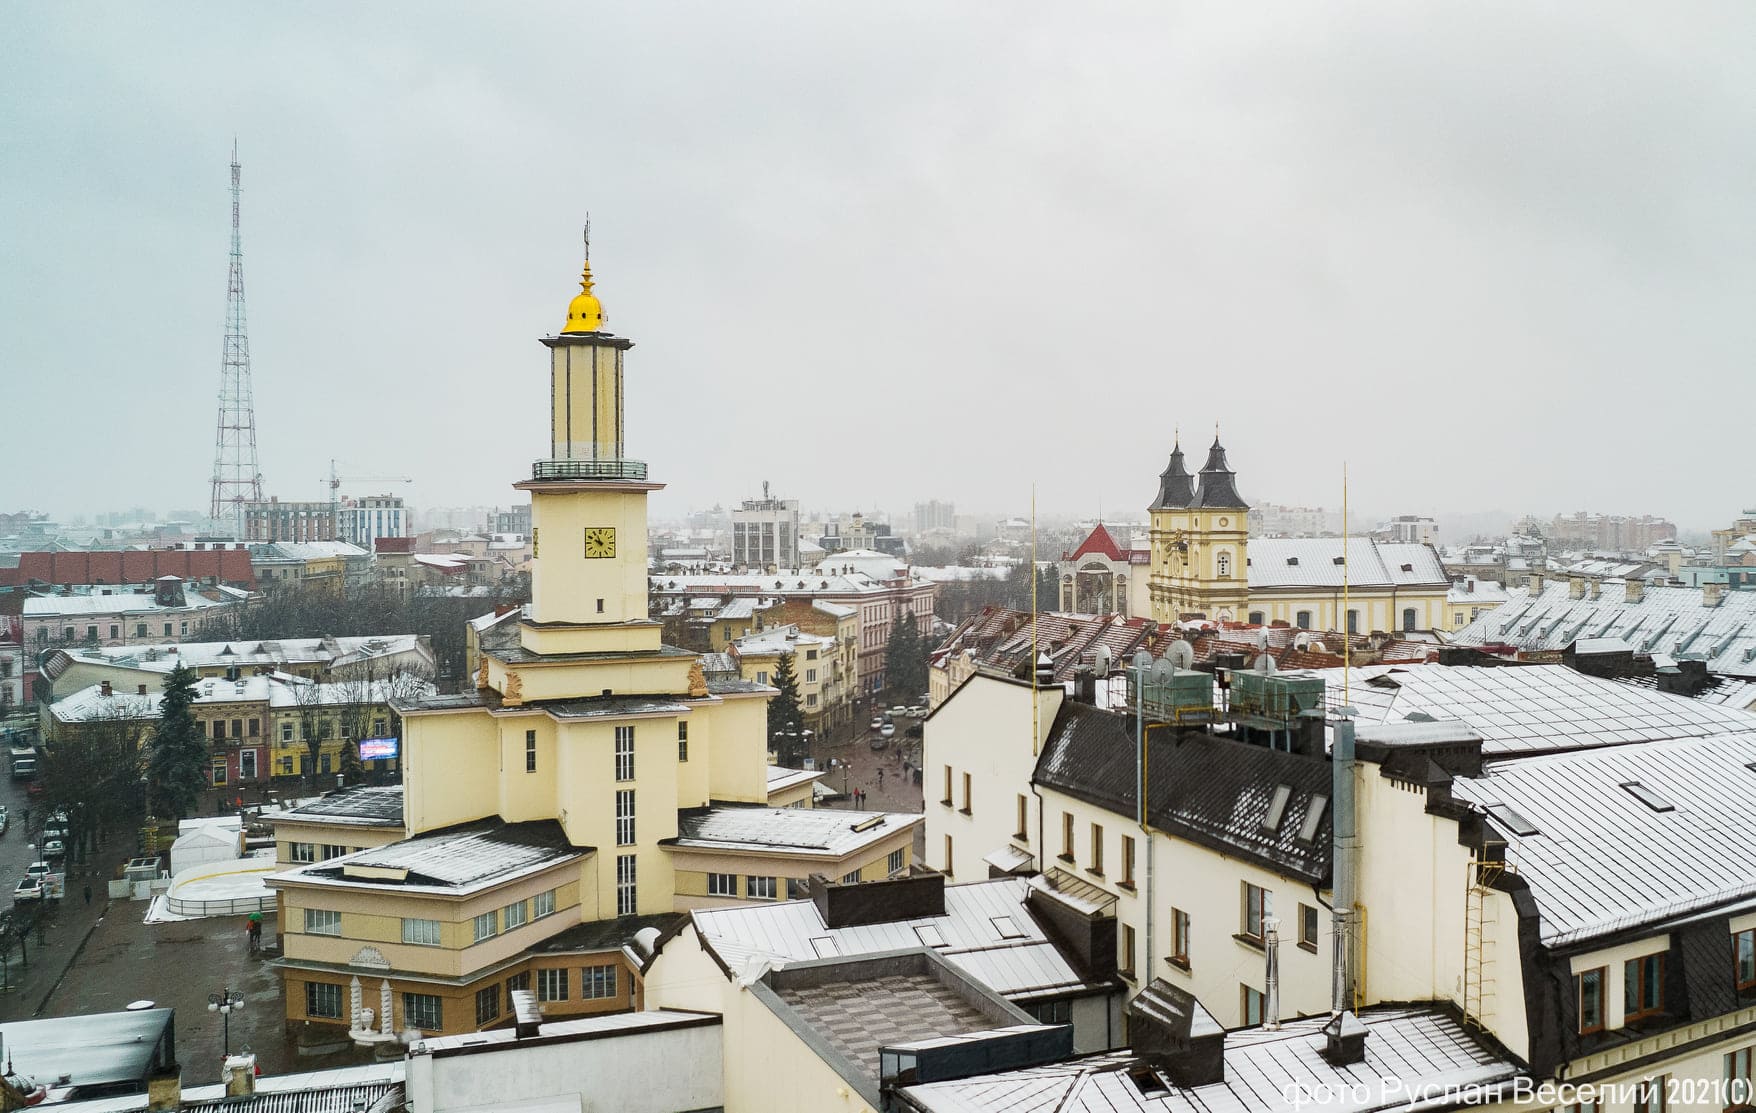 Чарівні світлини припорошеного снігом Франківська показали у мережі (ФОТО)